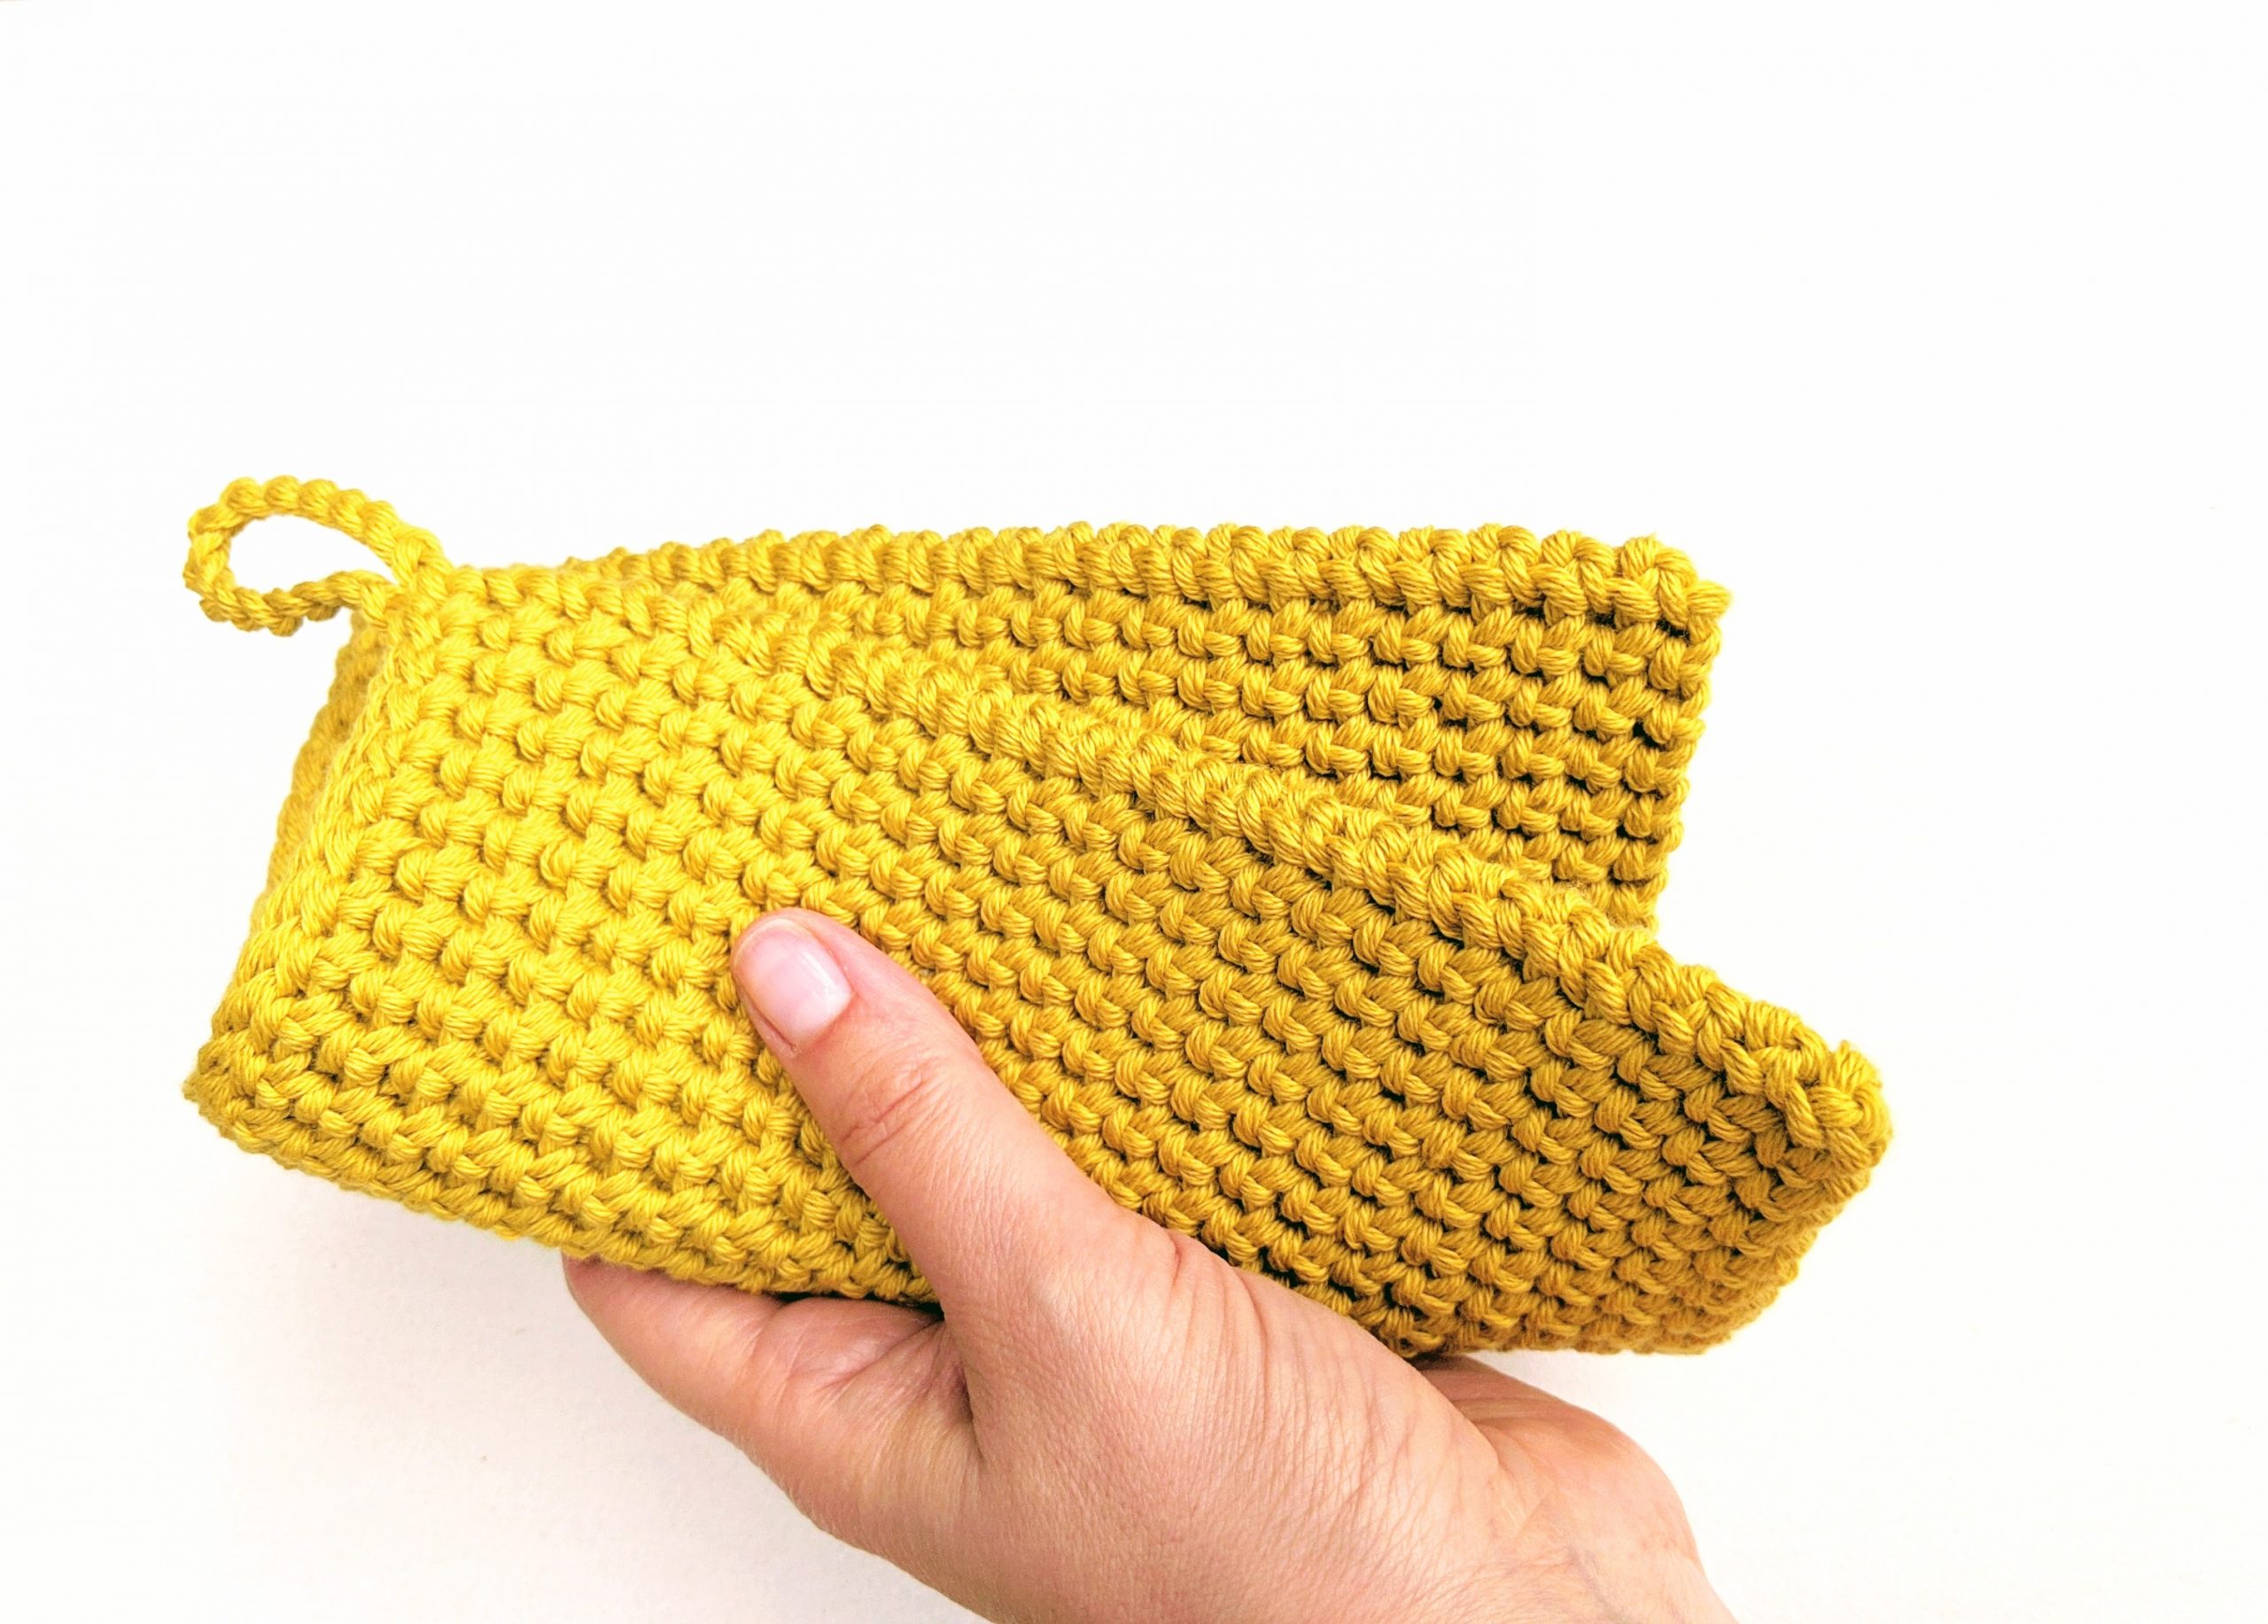 Crochet Potholder Pattern - Thermal Stitch - My Crochet Space